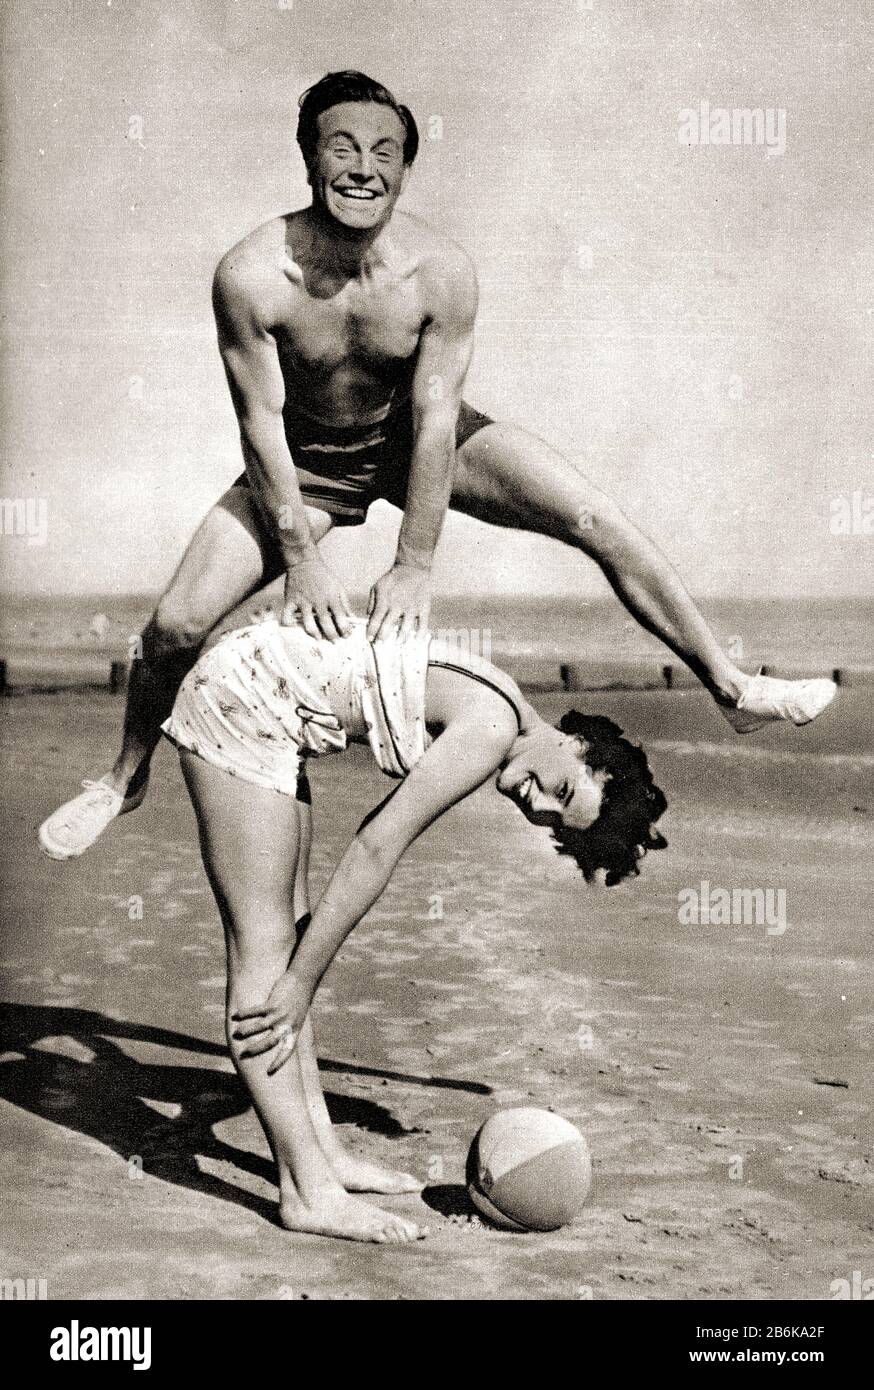 Circa 1950's fotografia che mostra un uomo e una donna che giocano rana salto su una spiaggia inglese, indossando i costumi tipici bagno / nuoto del tempo. Dietro si possono vedere i groins di legno che sono stati intesi per fermare le sabbie dallo spostamento. Foto Stock